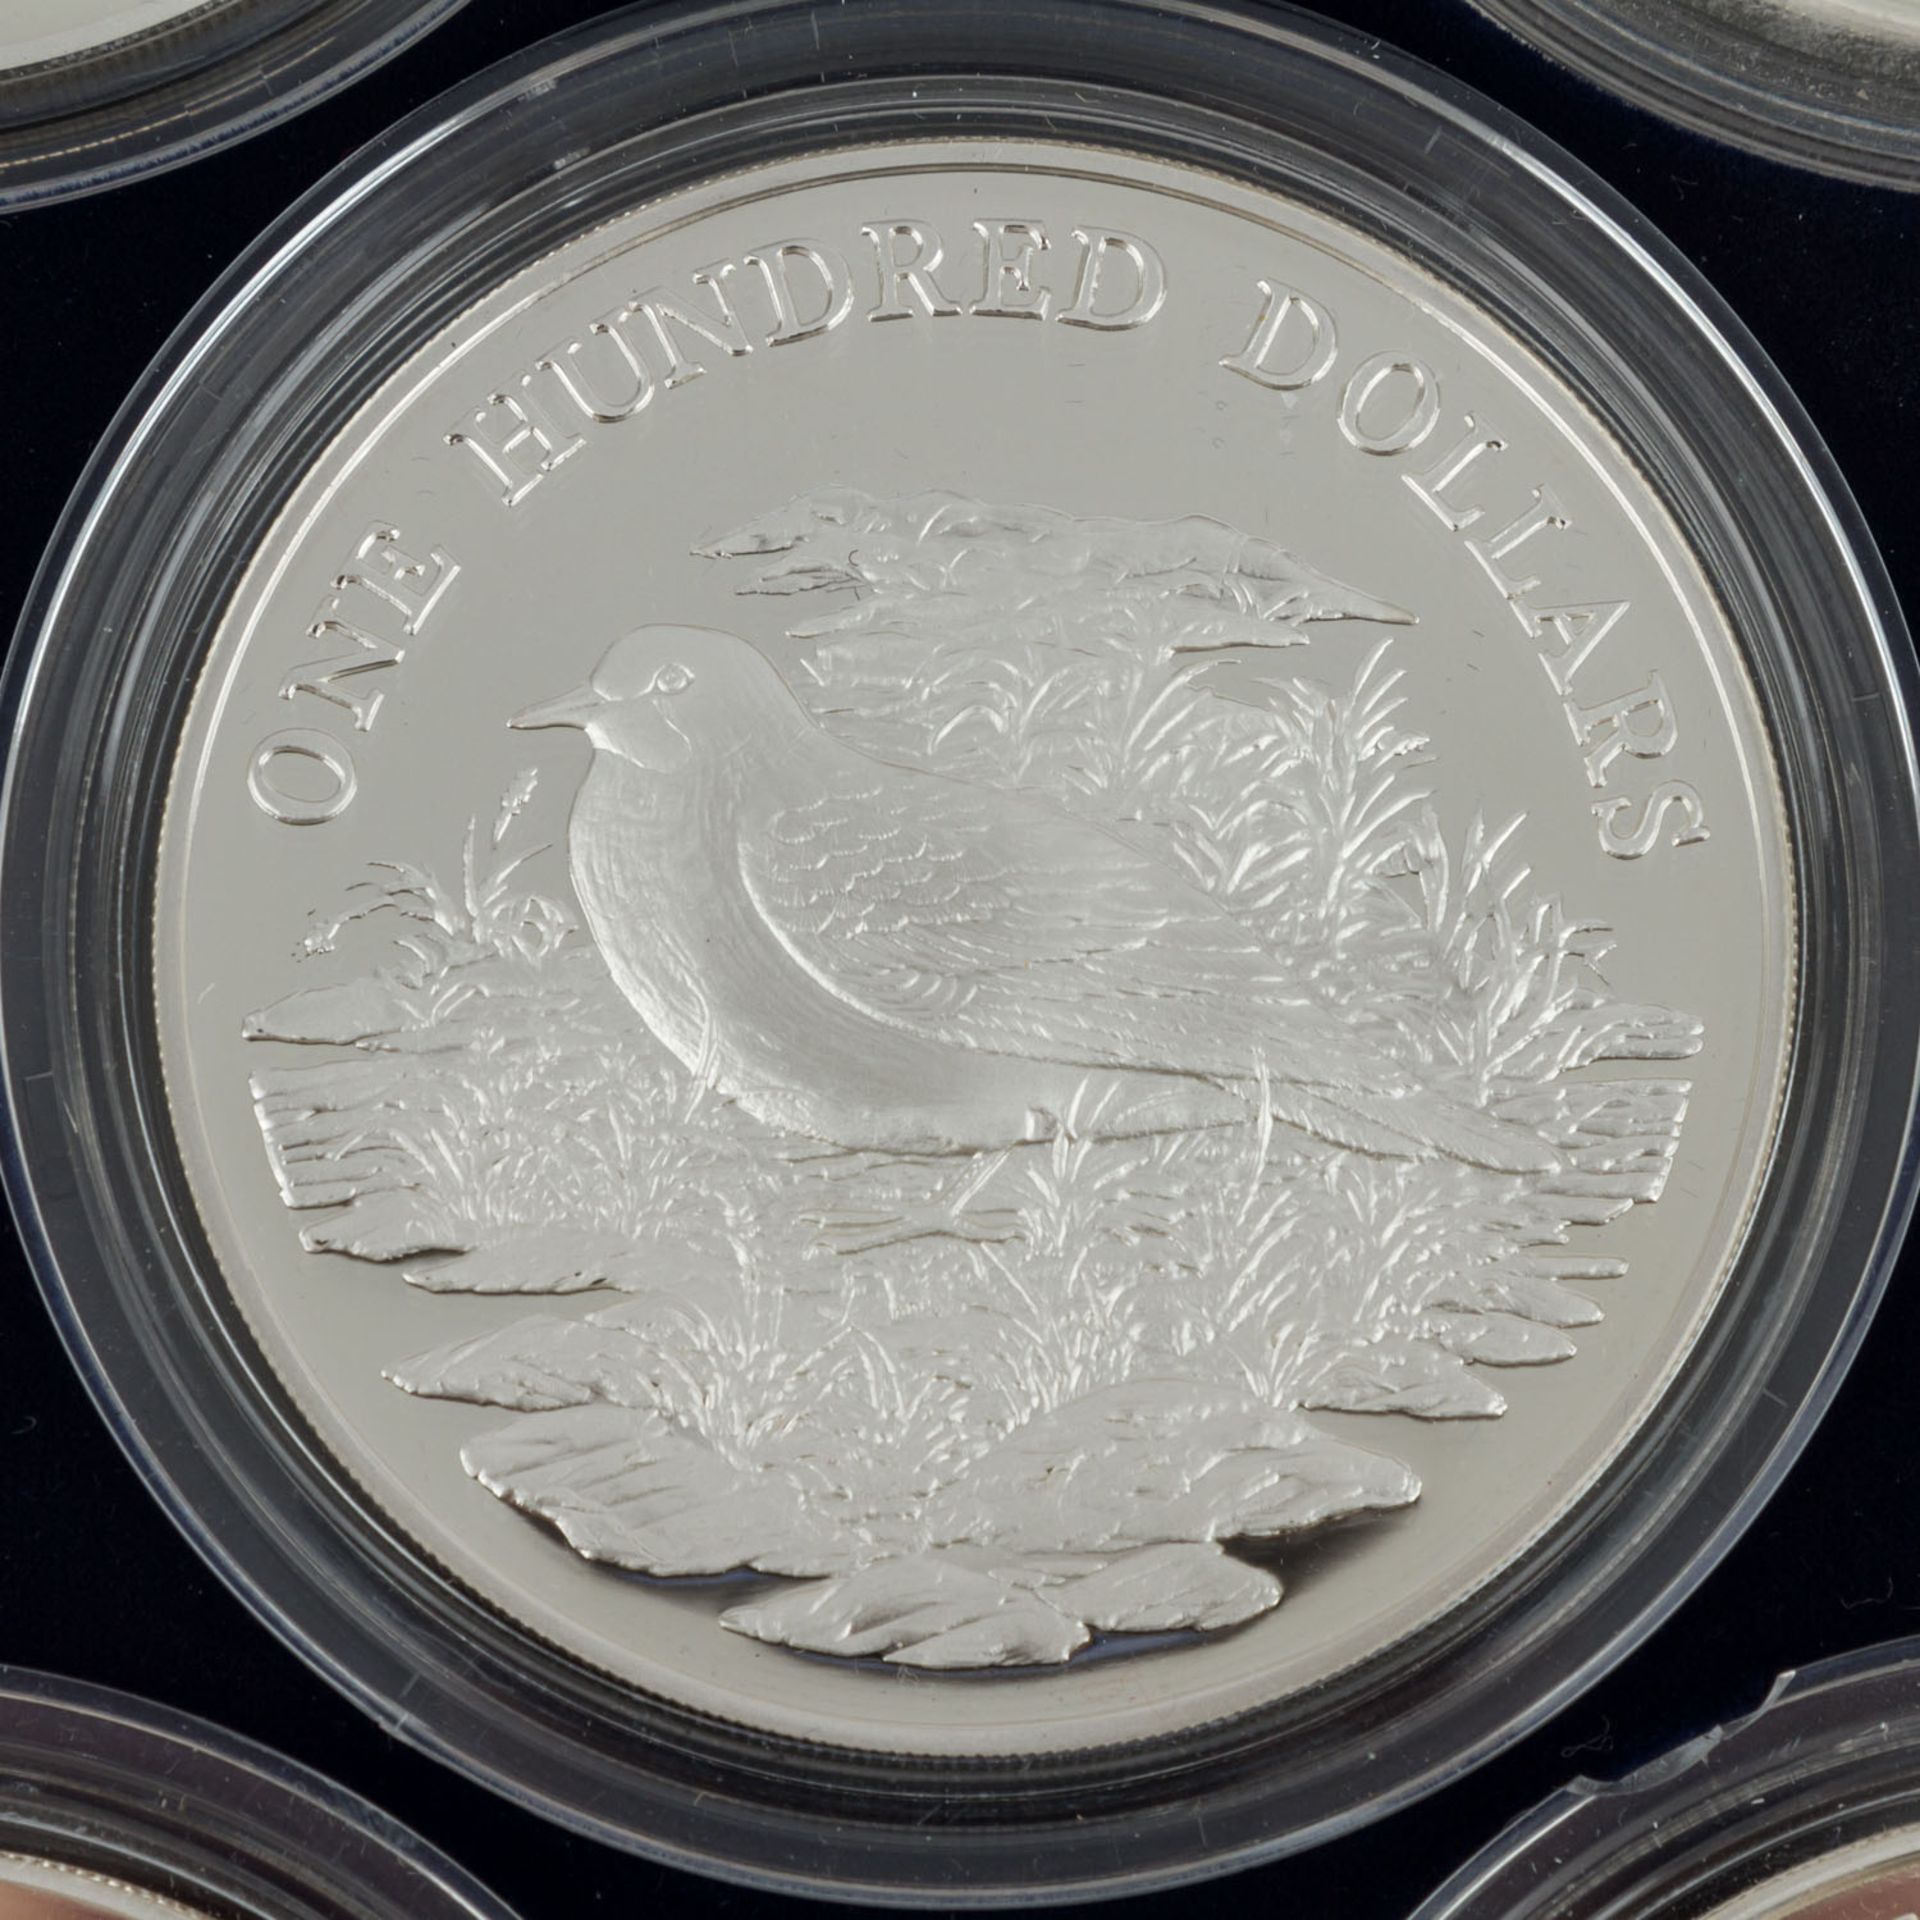 Vögel der Karibik - Wundervolle Sammlung von 7schwergewichtigen Silbermünzen je 5 Unzen Sterling - Bild 4 aus 7